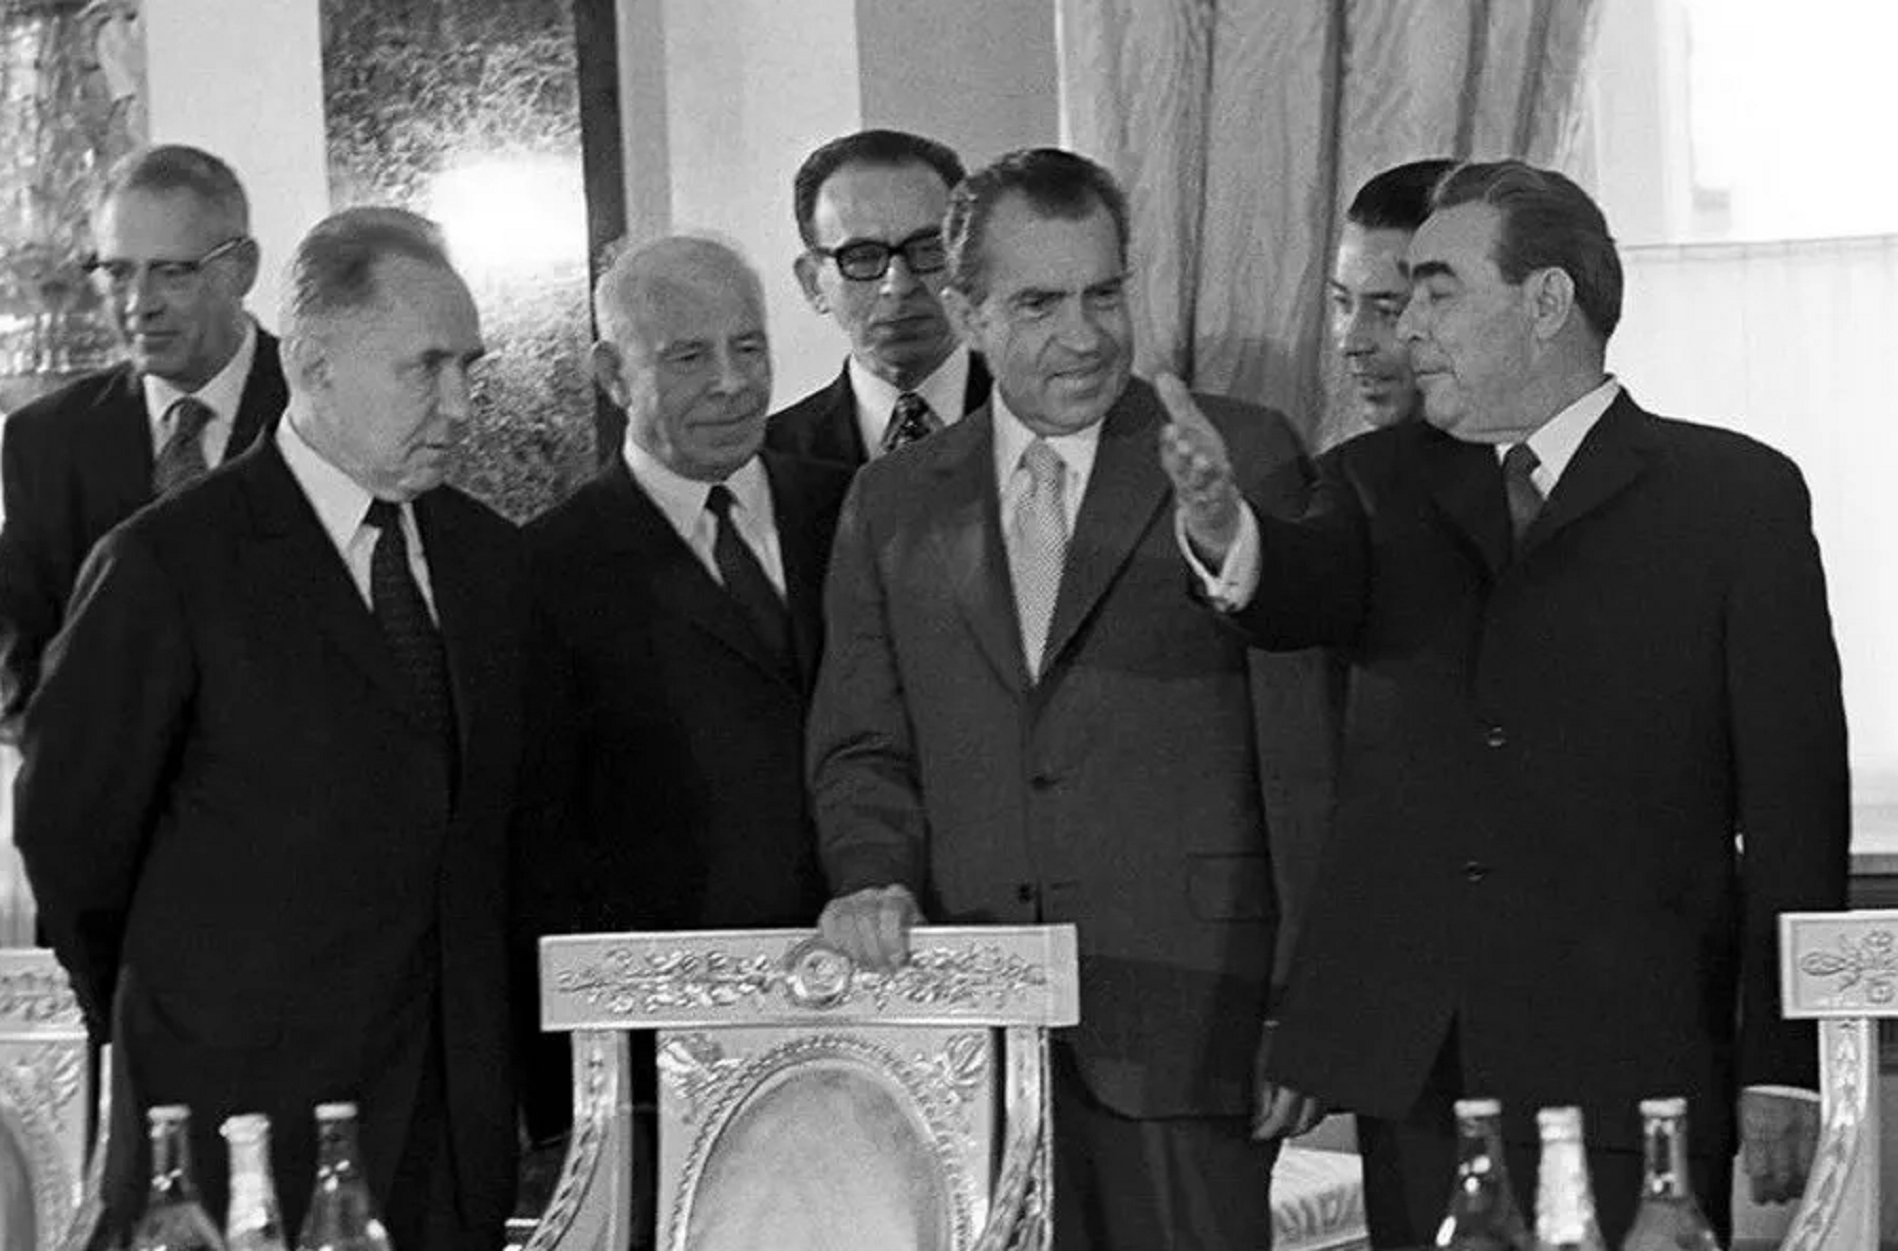 1 мая 1972 года. Визит Никсона в Москву 1972. Никсон и Брежнев 1972. Визит в Москву президента США Никсона.